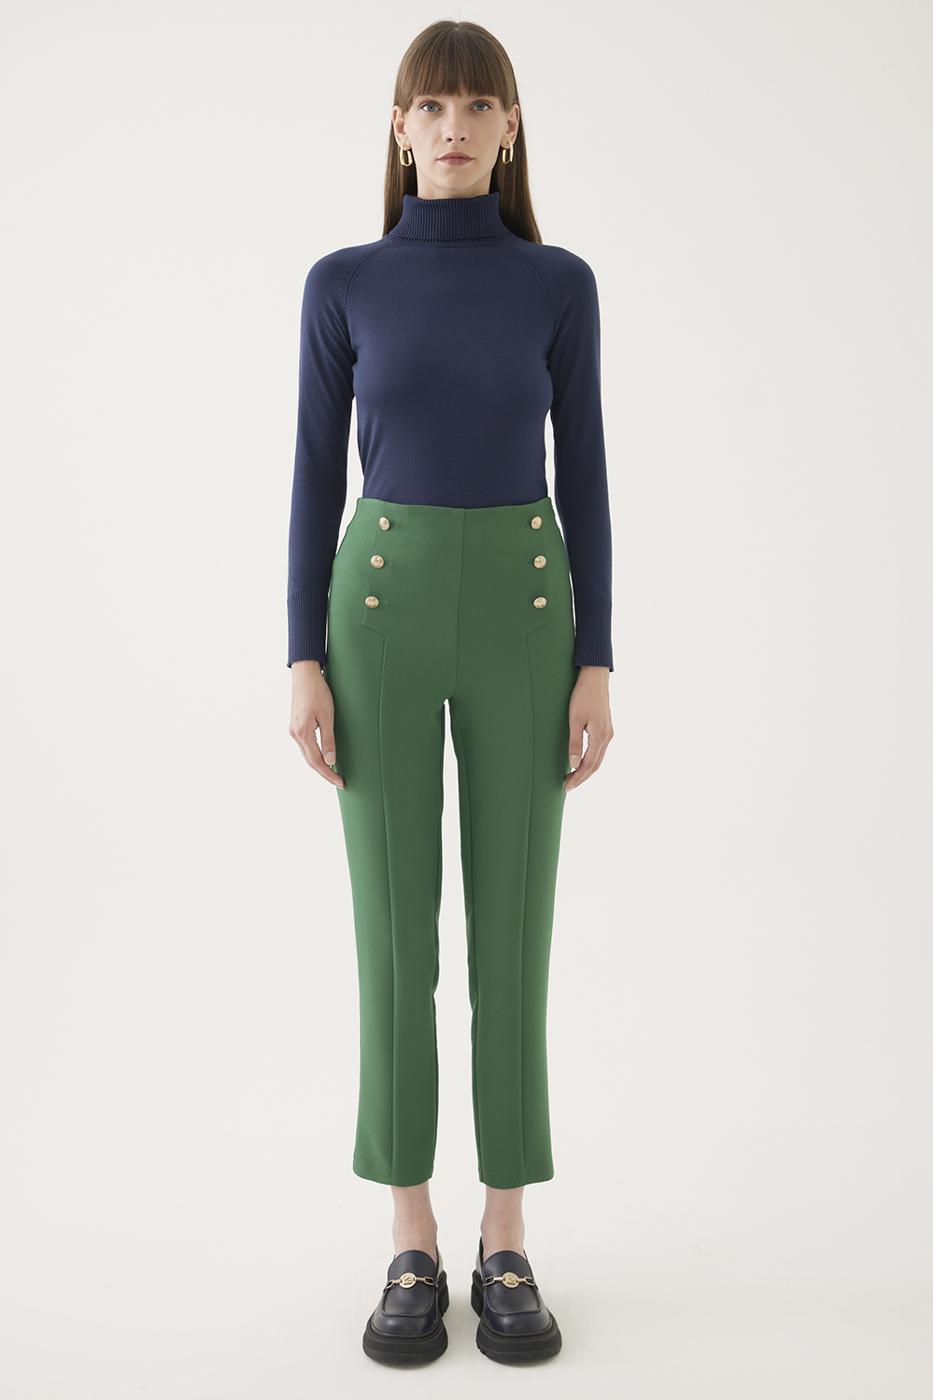 Bayan ZÜMRÜT YEŞİLİ İbbie Regular Fit Bilek Boy Boru Paça Zümrüt Yeşili Renk Kadın Pantolon